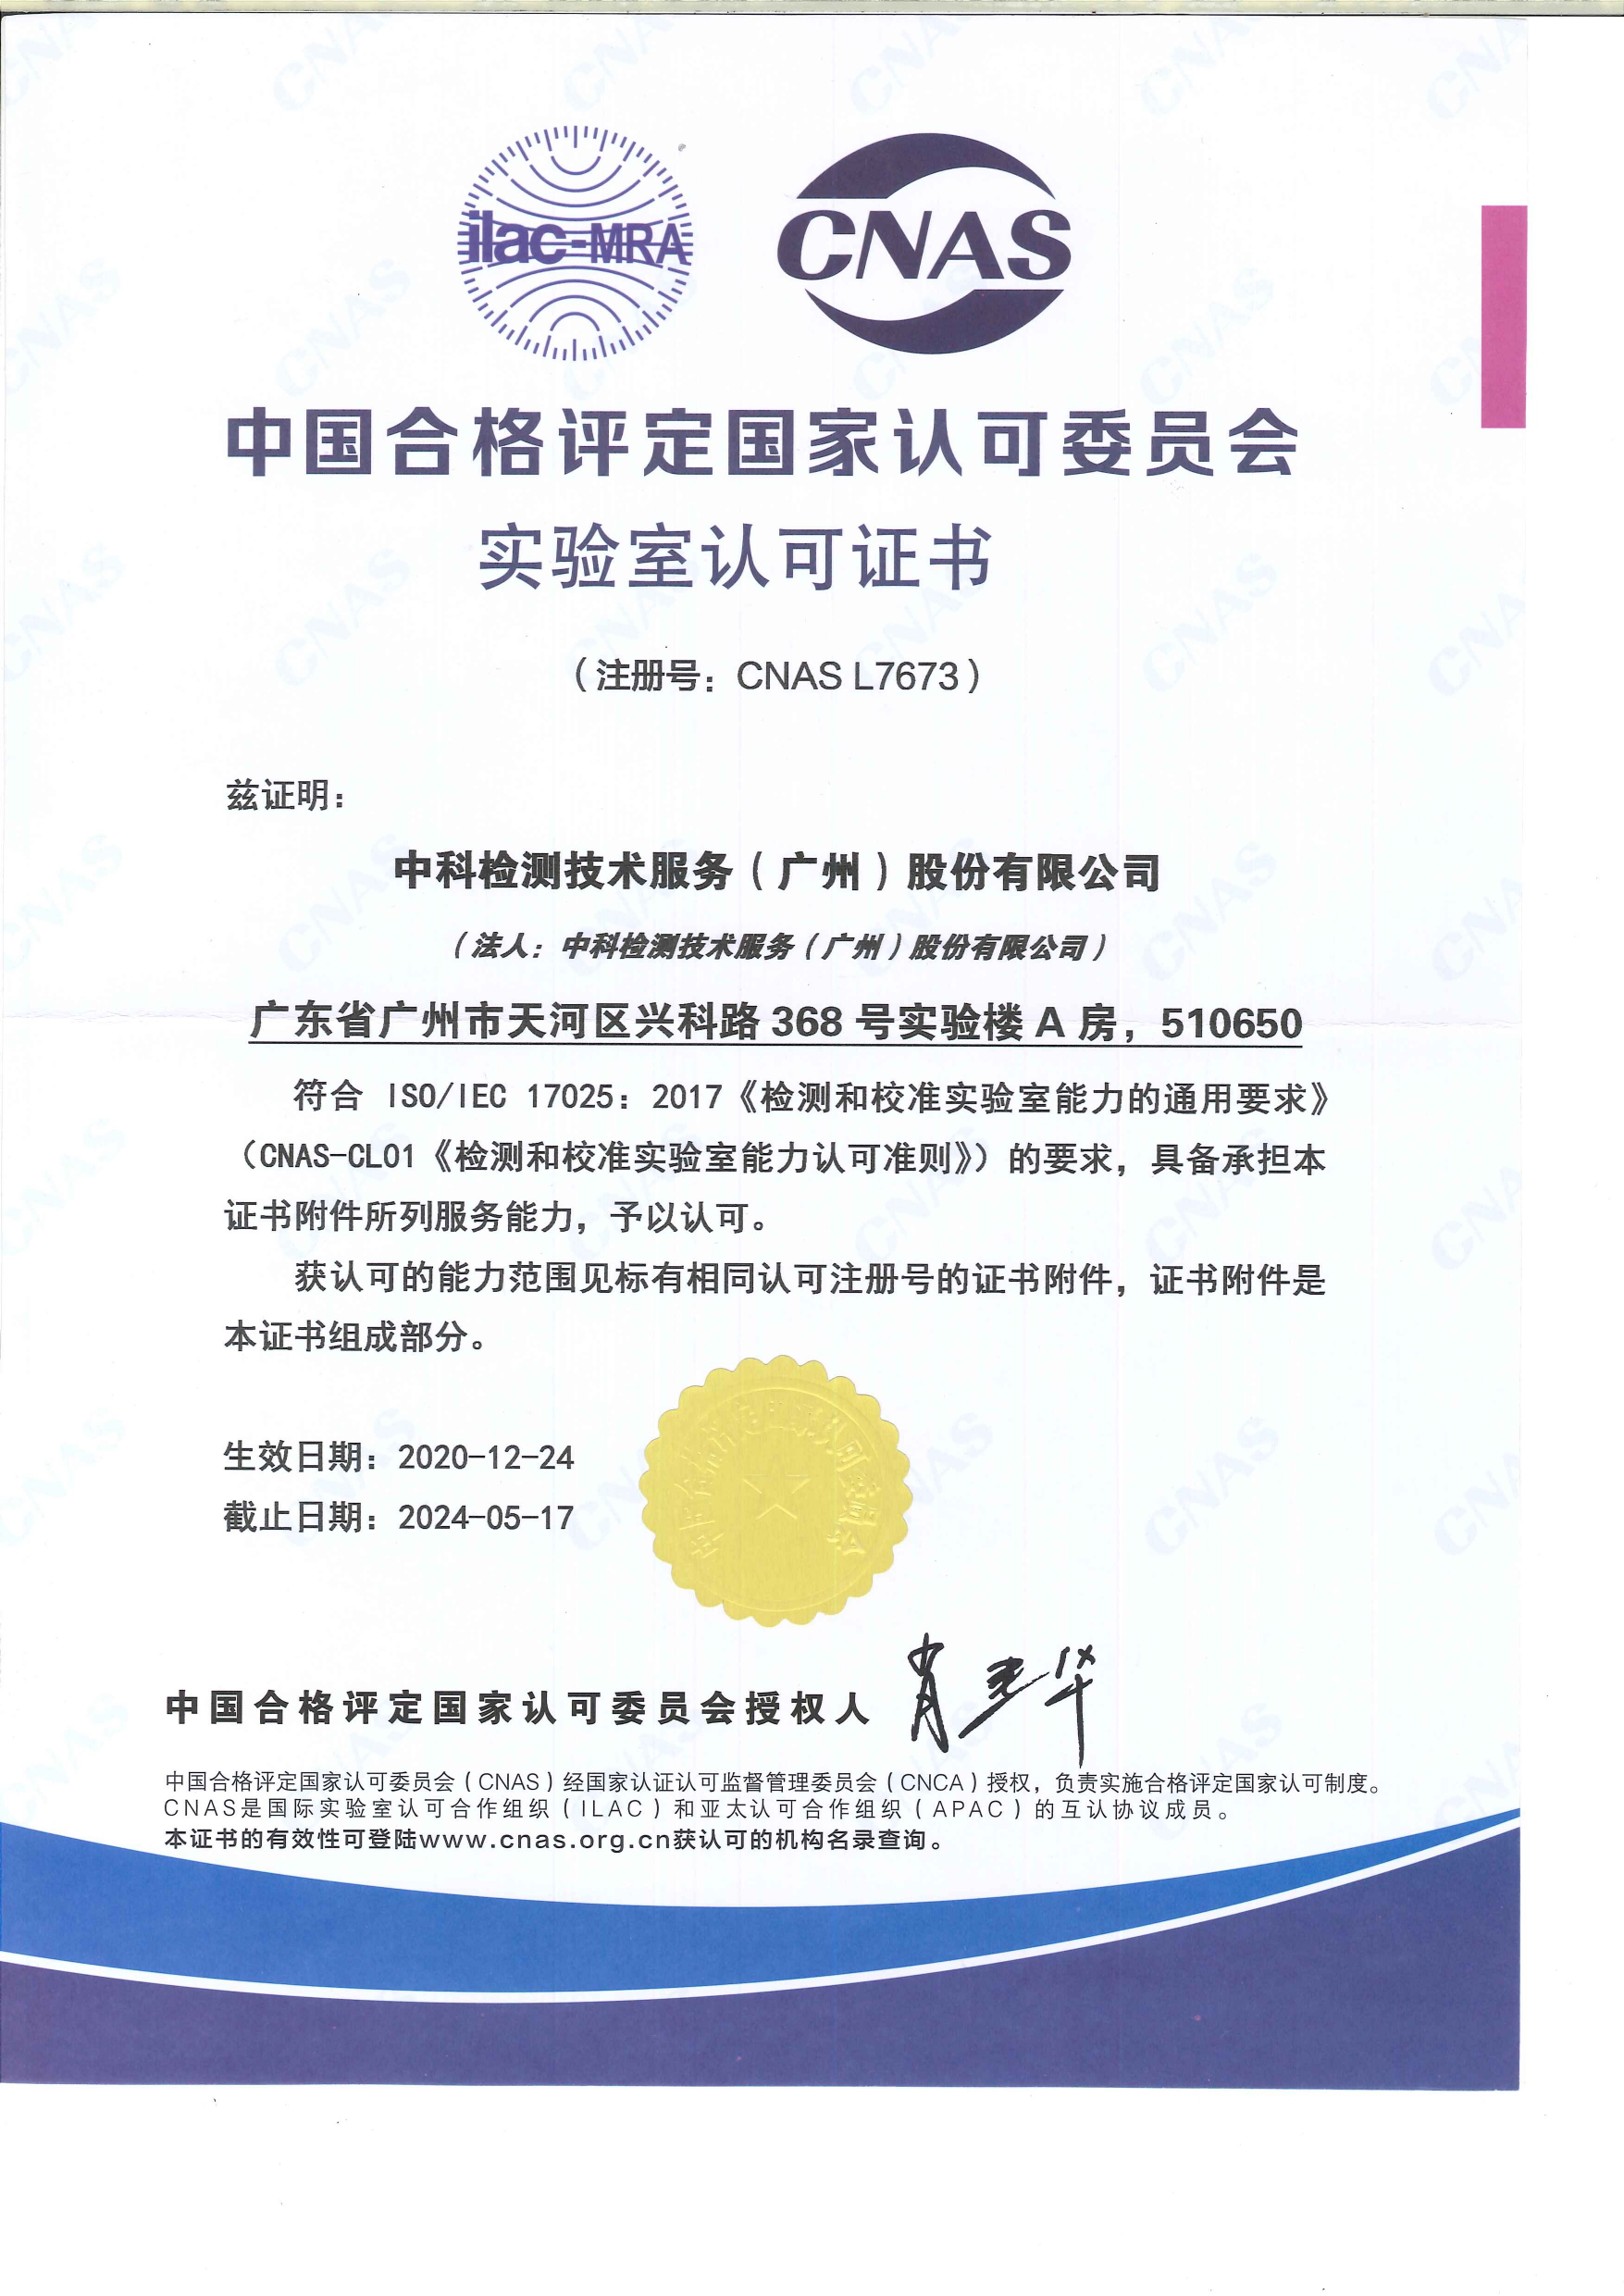 广州中科检测CNAS资质证书